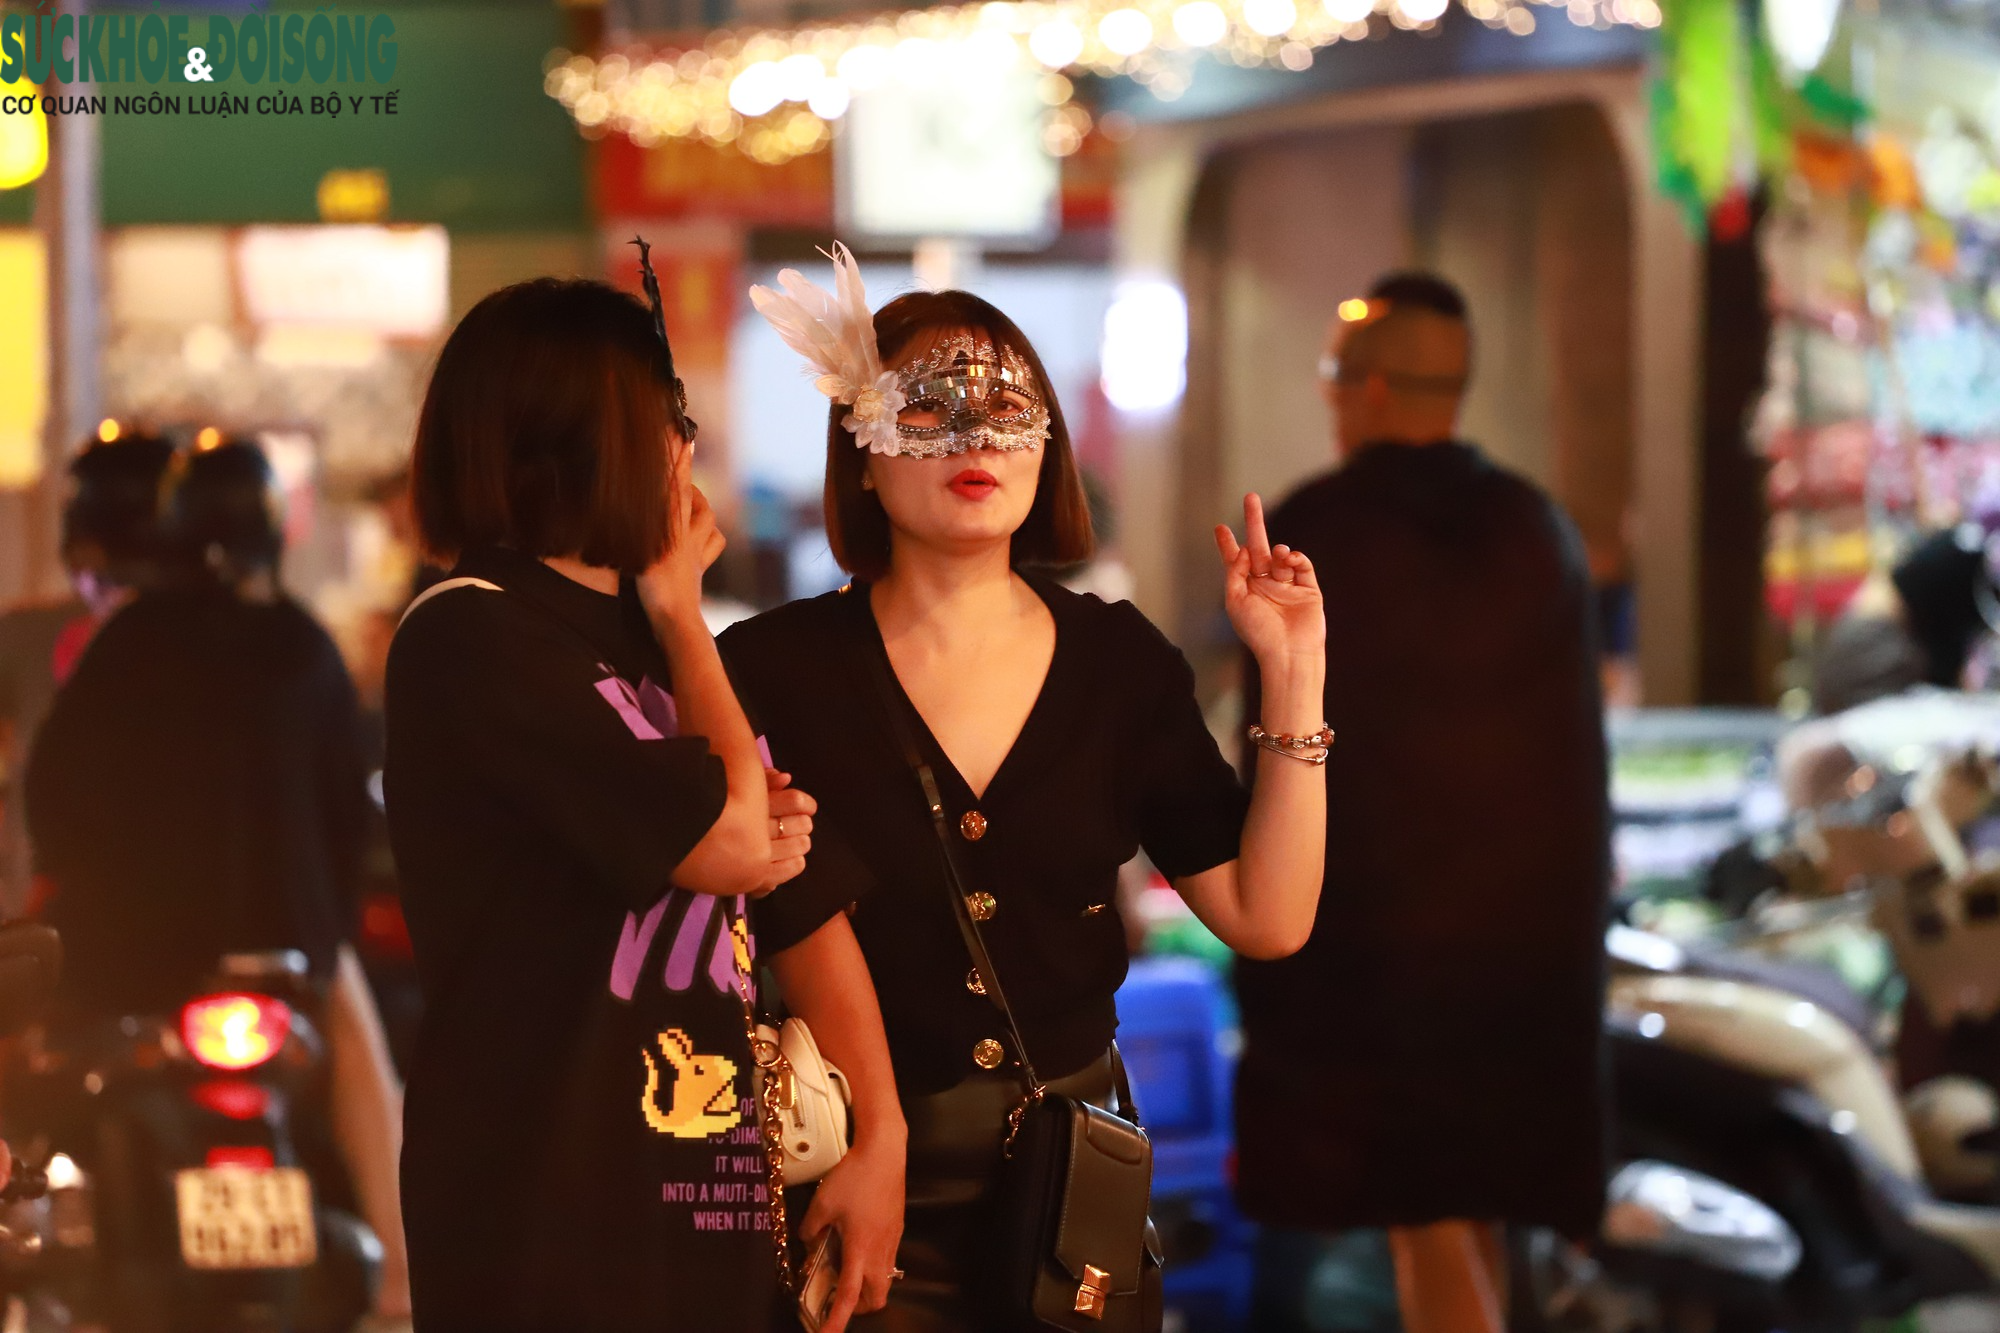 Hà Nội: Dàn 'nhóc tì' xuống phố, hóa trang độc lạ trong đêm Halloween - Ảnh 5.